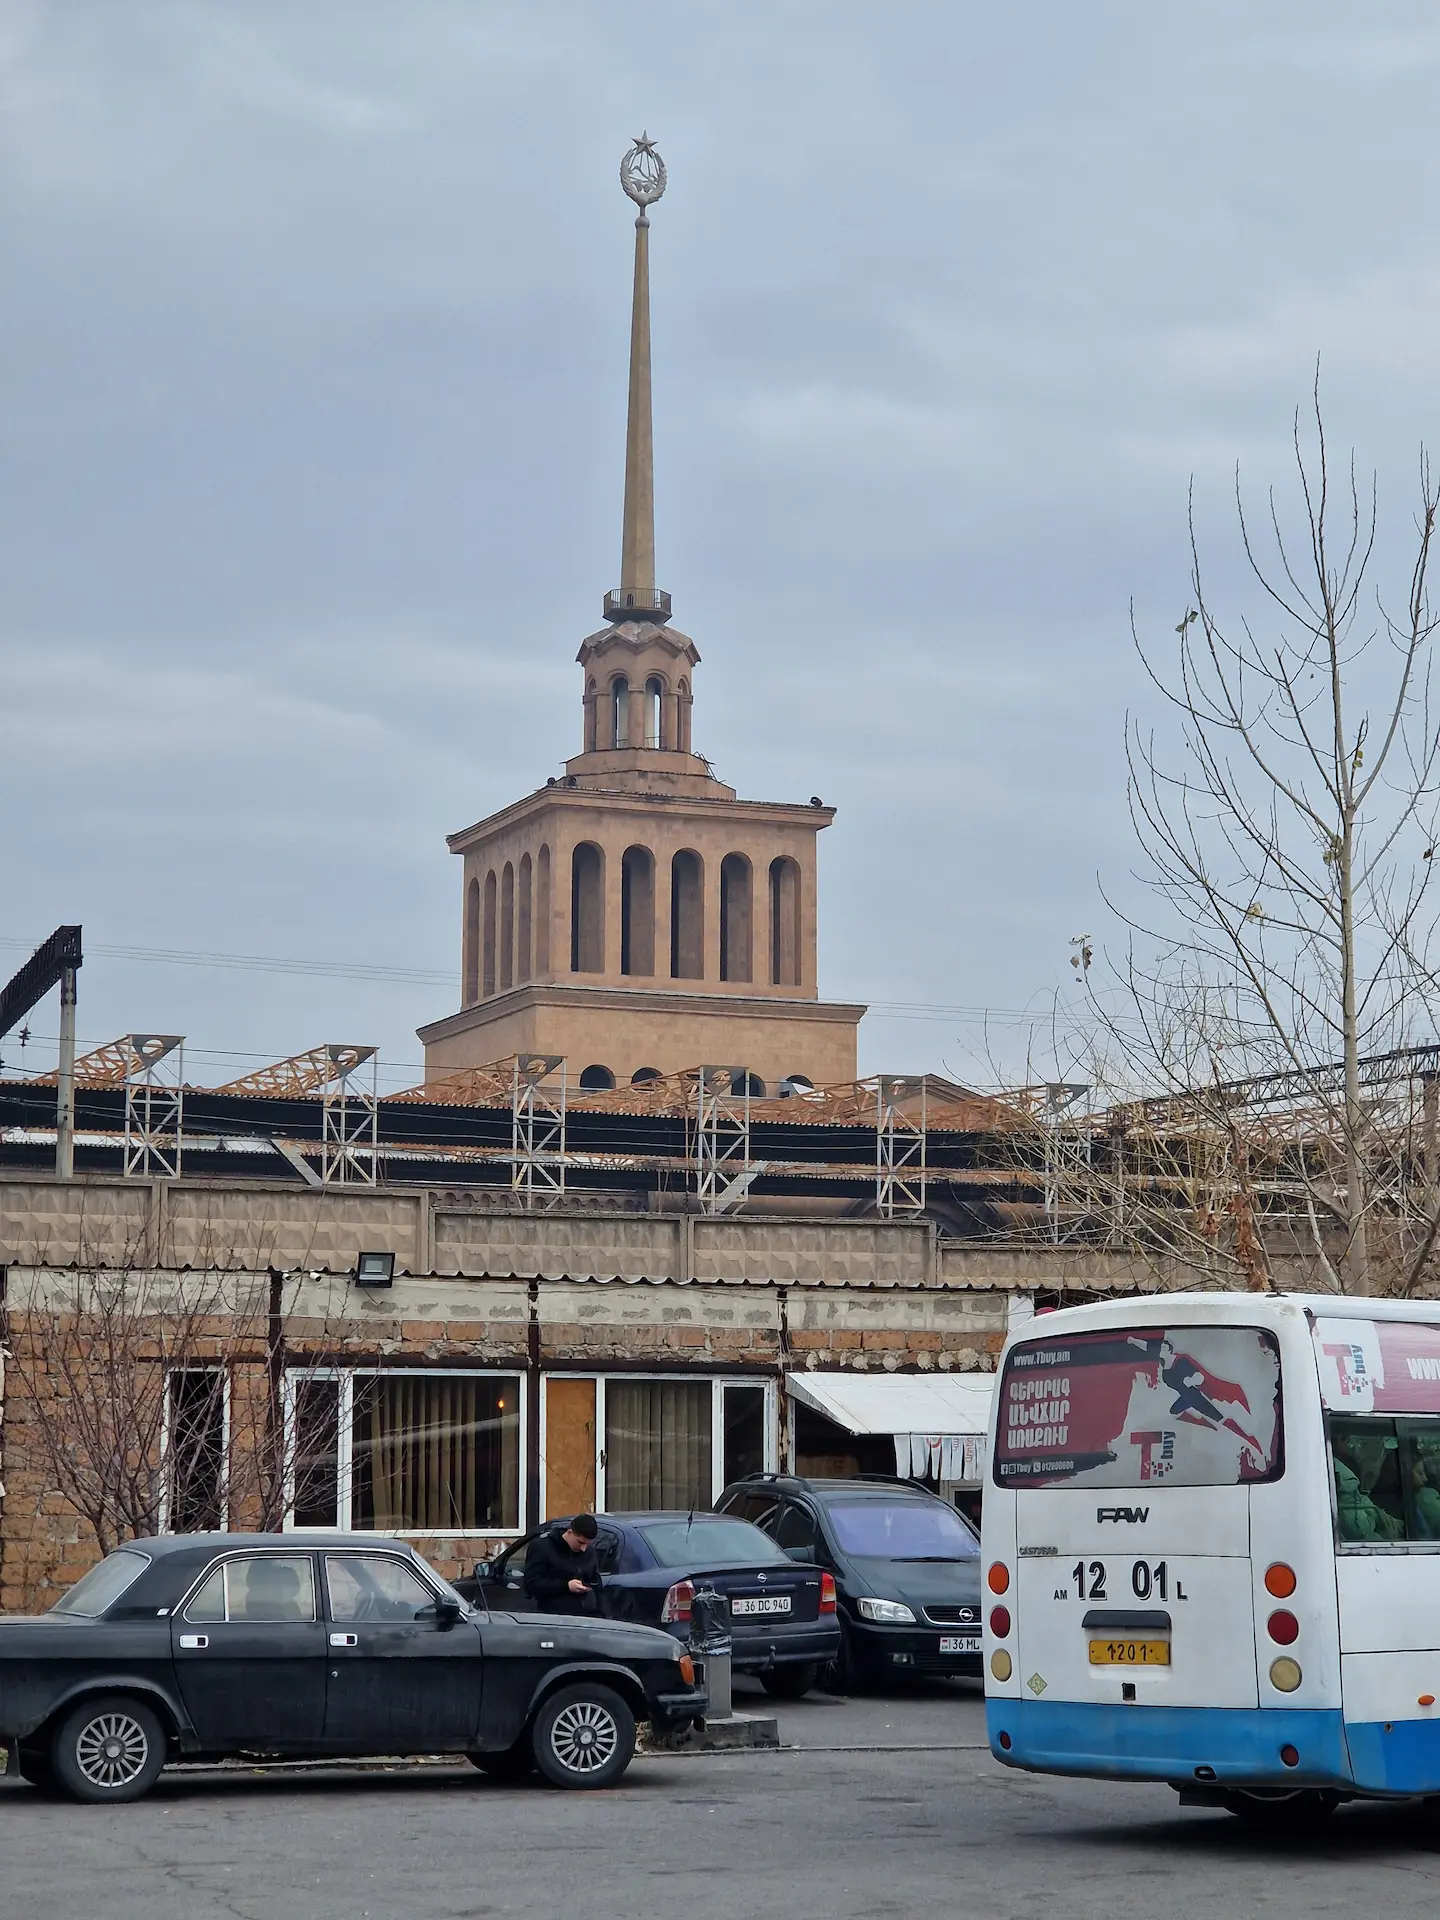 La gare de Yerevan vue de l'extérieur et de jour. Le bâtiment est décoré de colonnes et d'une immense pointe terminée en une étoile socialiste.